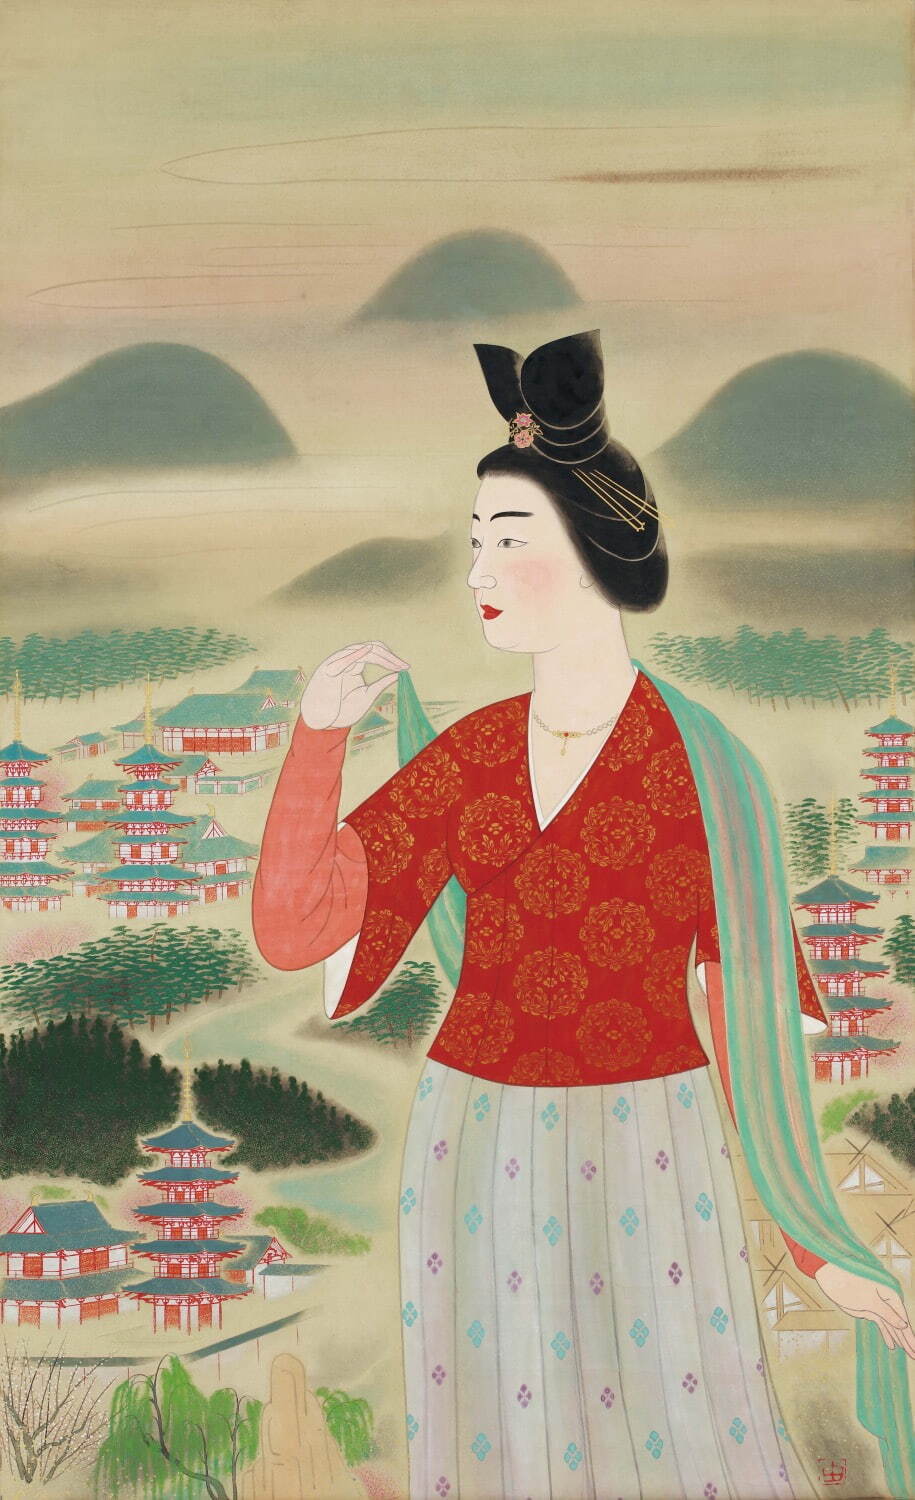 日本画家・小倉遊亀の展覧会が滋賀県立美術館で - 人物画や静物画の 